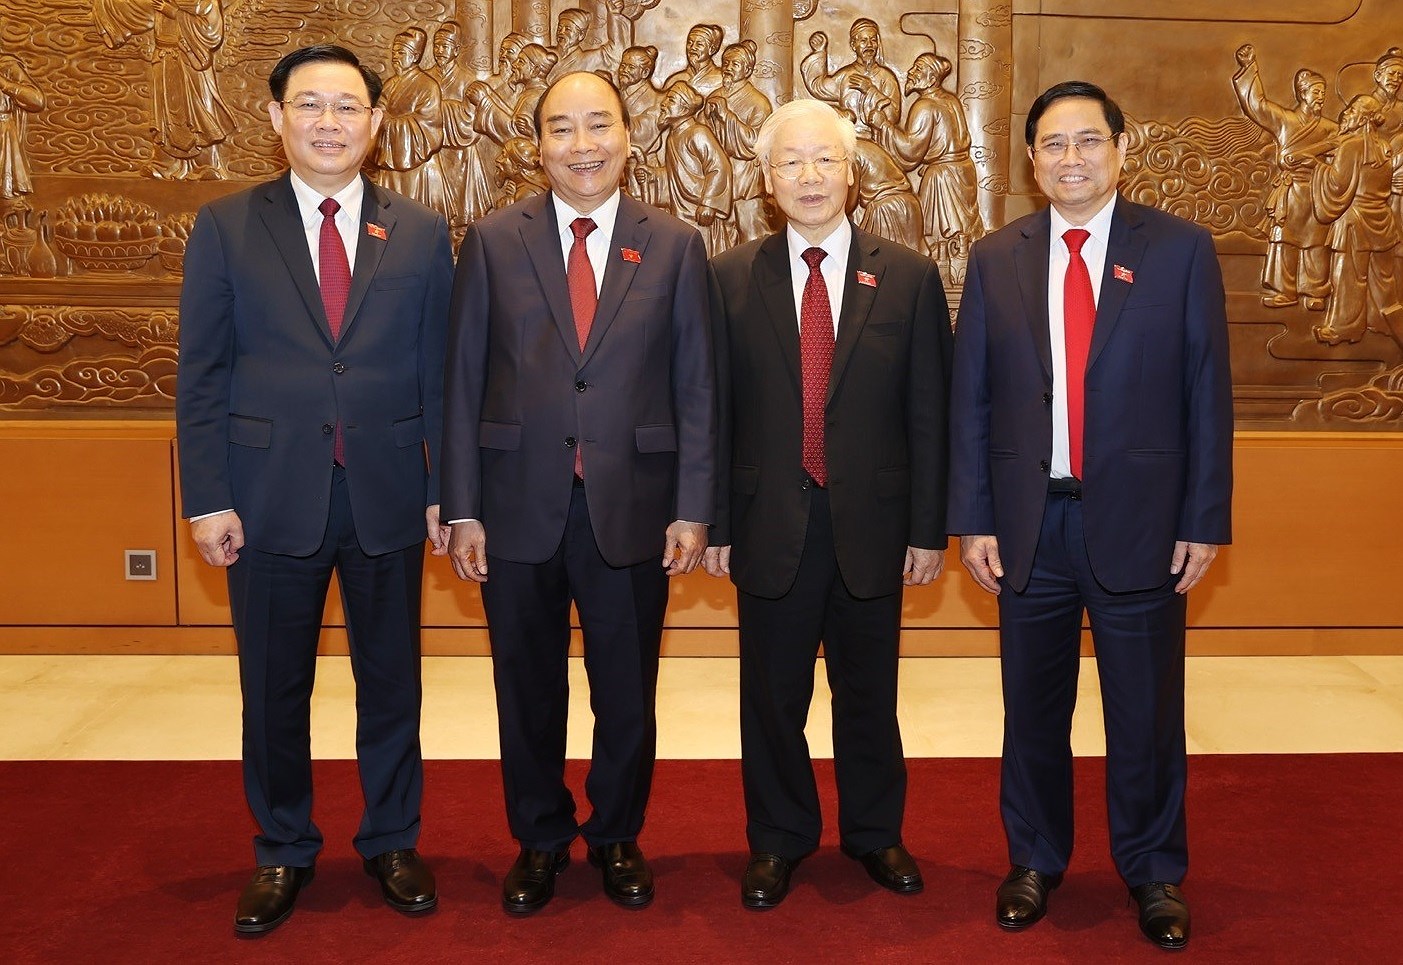 Continuan llegando cartas de felicitacion a nuevos dirigentes de Vietnam hinh anh 1